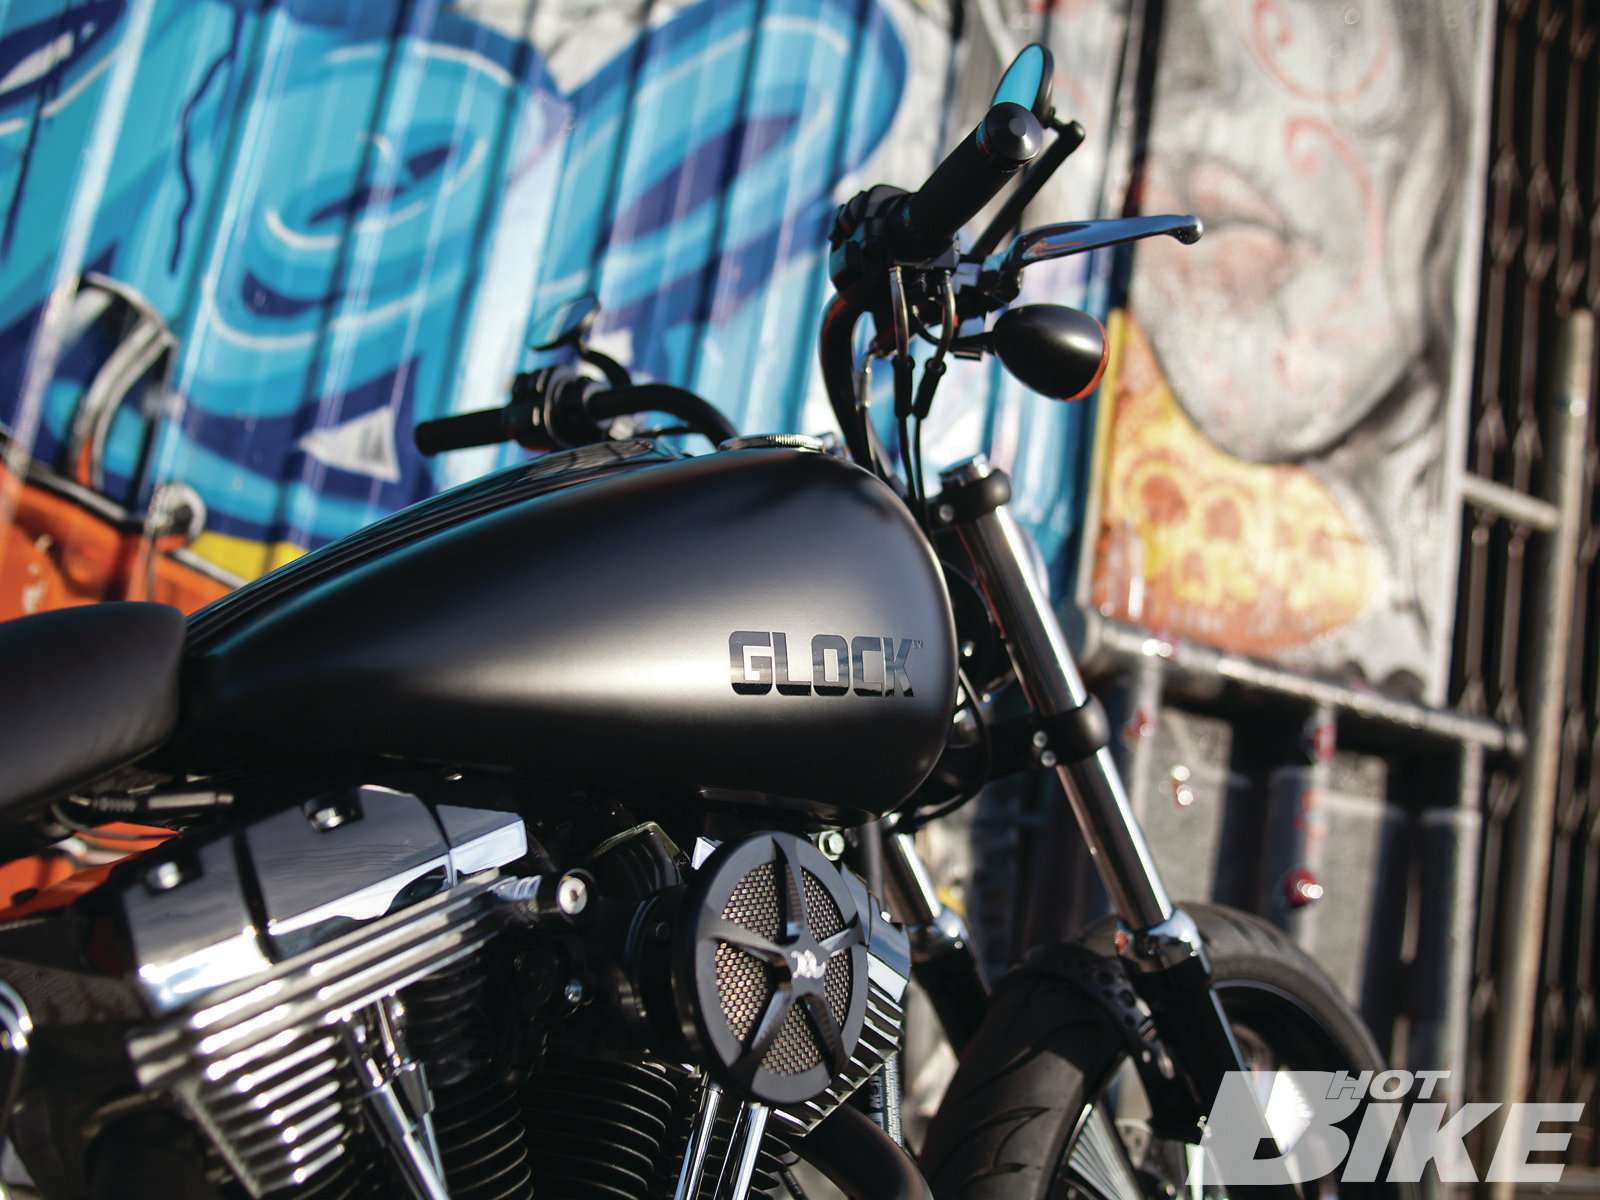 The Glock Bike | 2012 Harley-Davidson Foster Glock Edition - Hot Bike Magazine